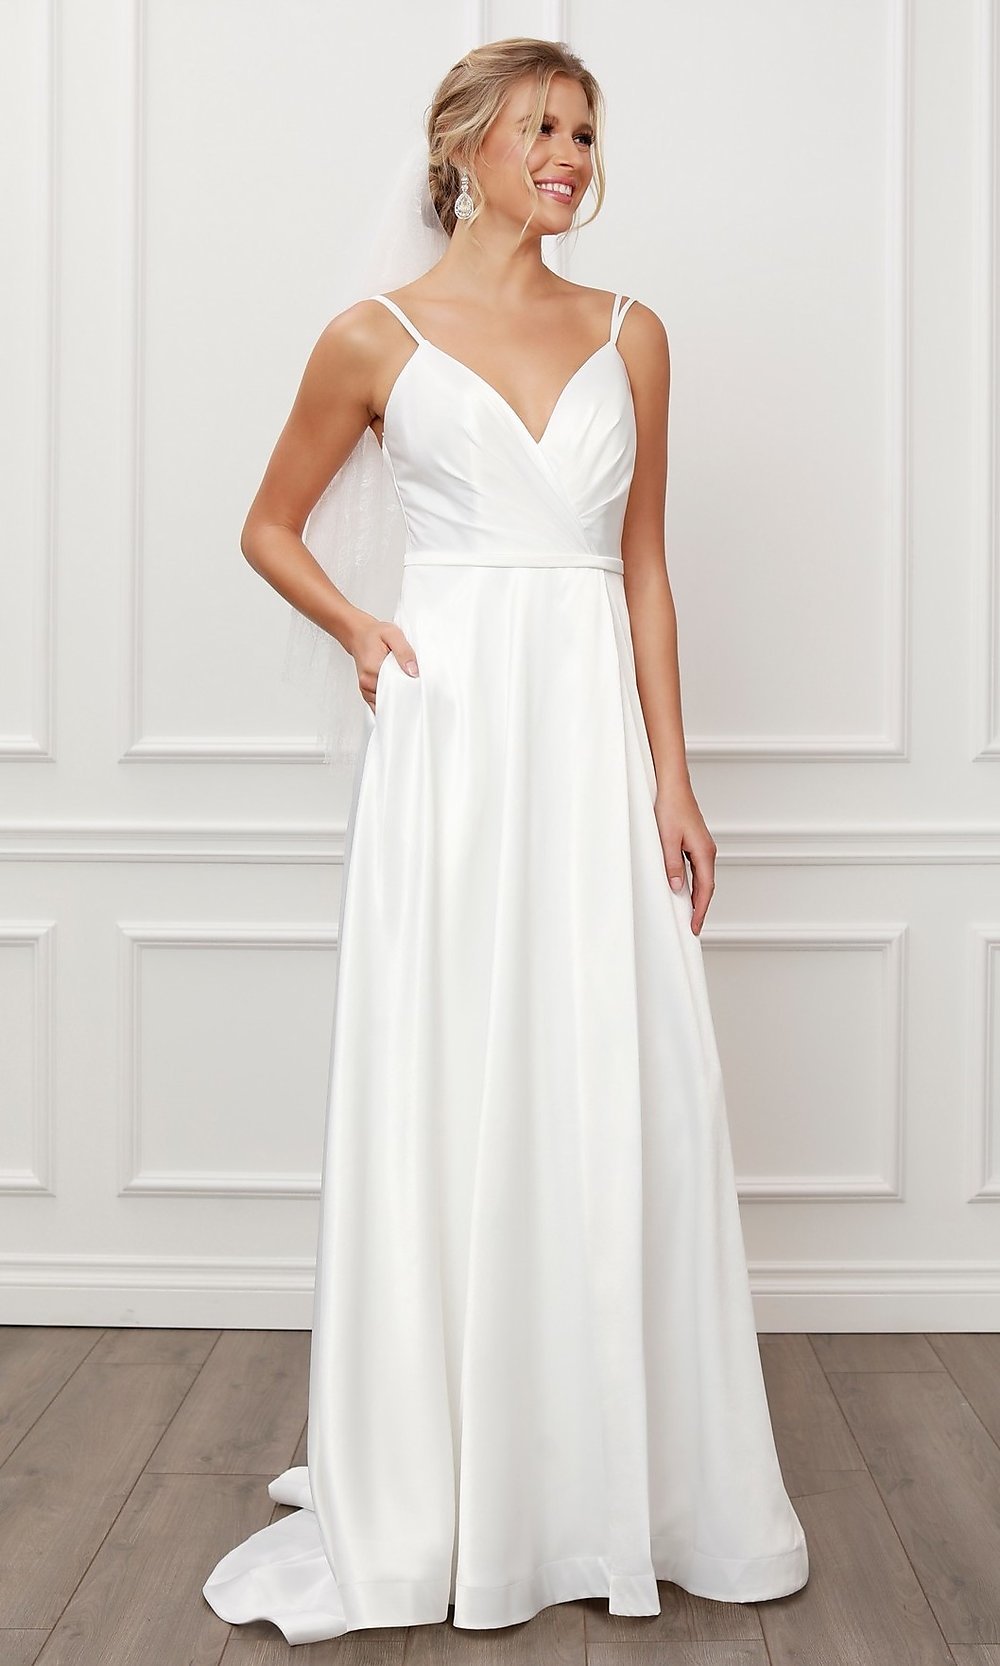 Bead-embellished Satin Dress - White - Ladies | H&M US